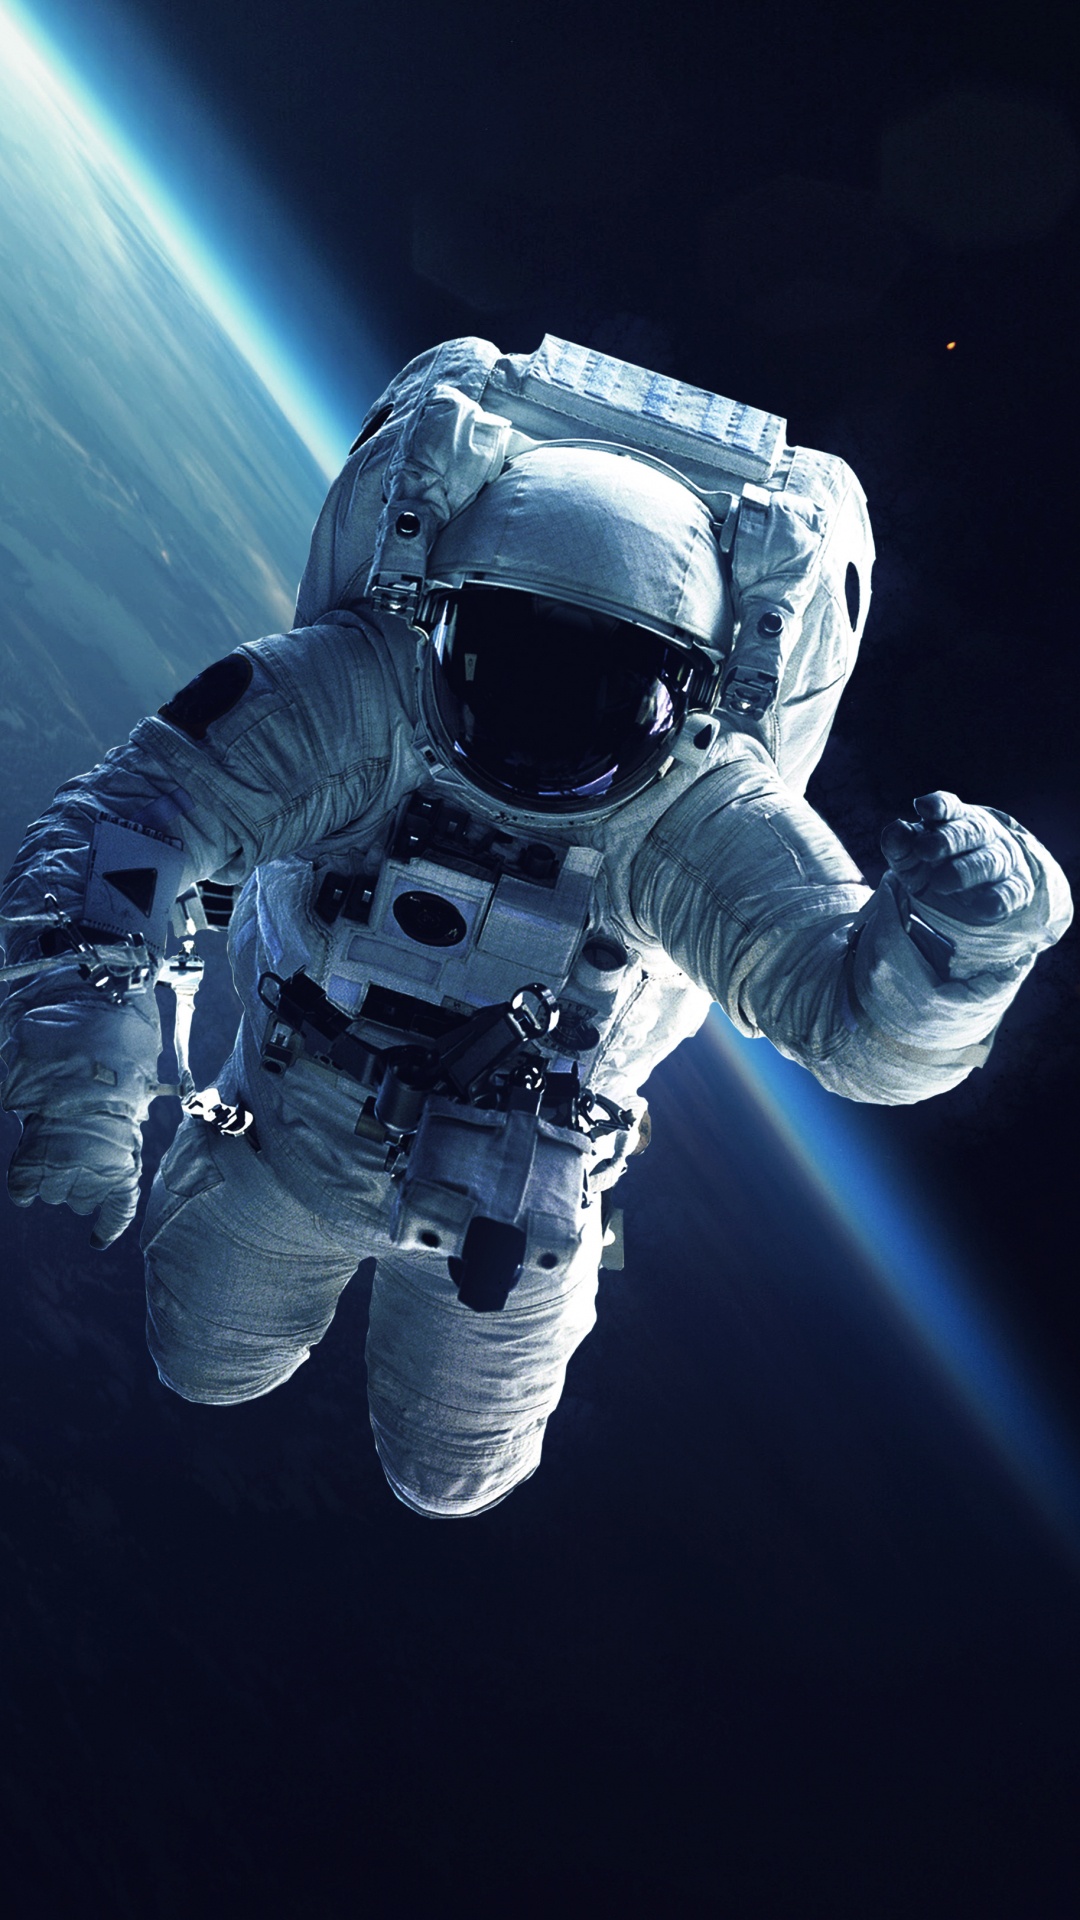 国际空间站, 宇航员, 美国宇航局, 空间探索, 外层空间 壁纸 1080x1920 允许